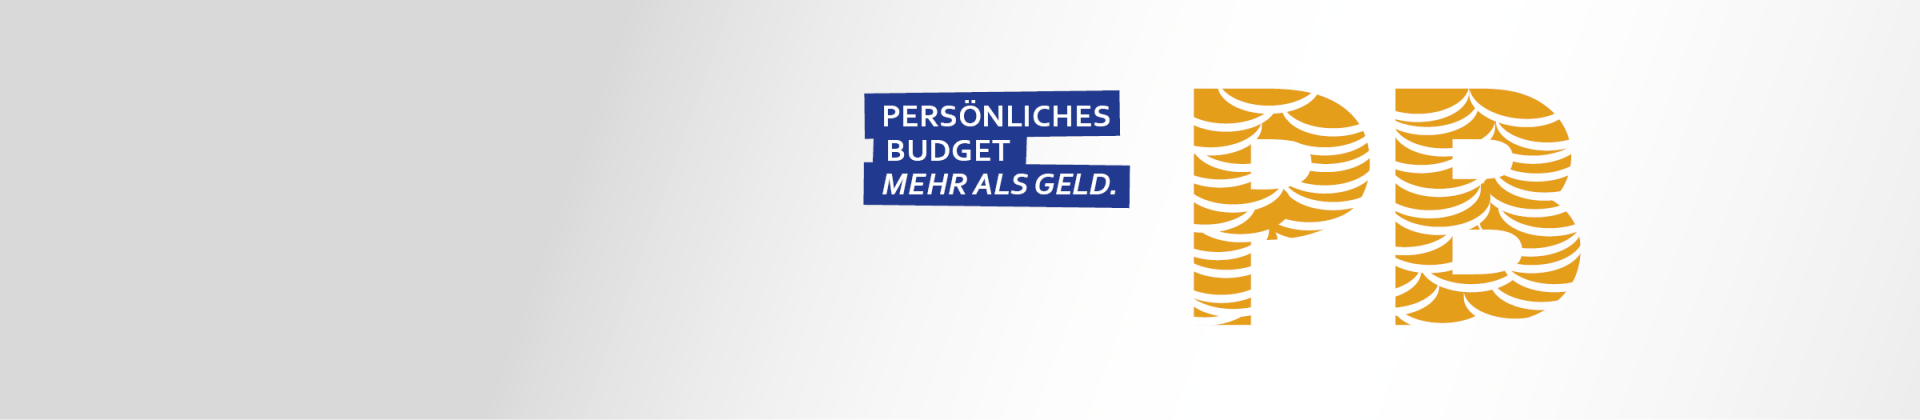 Banner zur Kampagne Persönliches Budget, Text: Mehr als Geld" und daneben die Buchstaben PB stilisiert zusammengesetzt aus Stapeln von Münzen